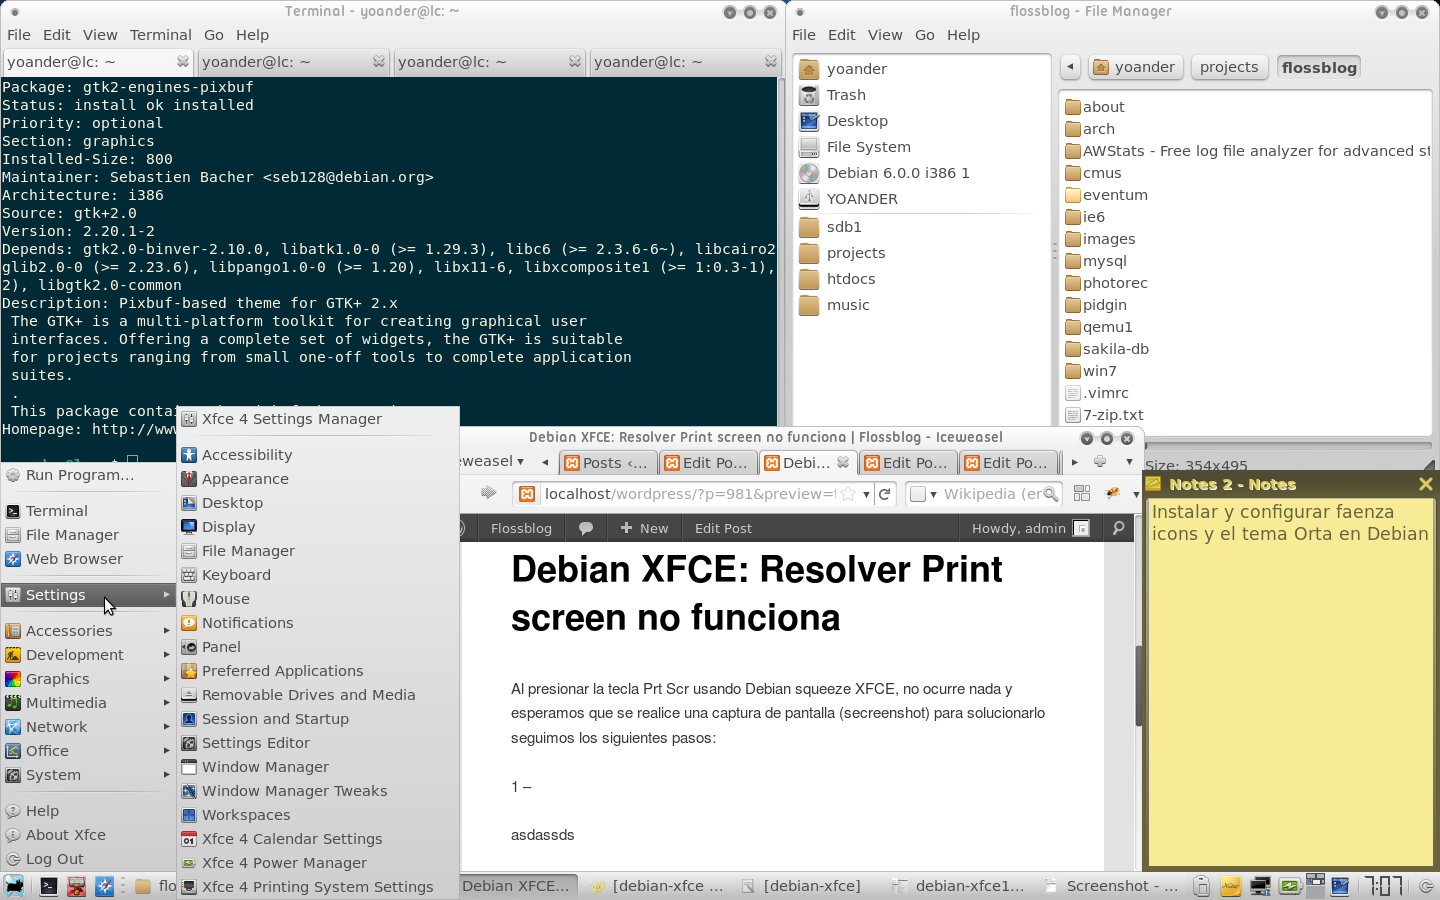 Debian XFCE Destop iconos Faenza y tema Orta